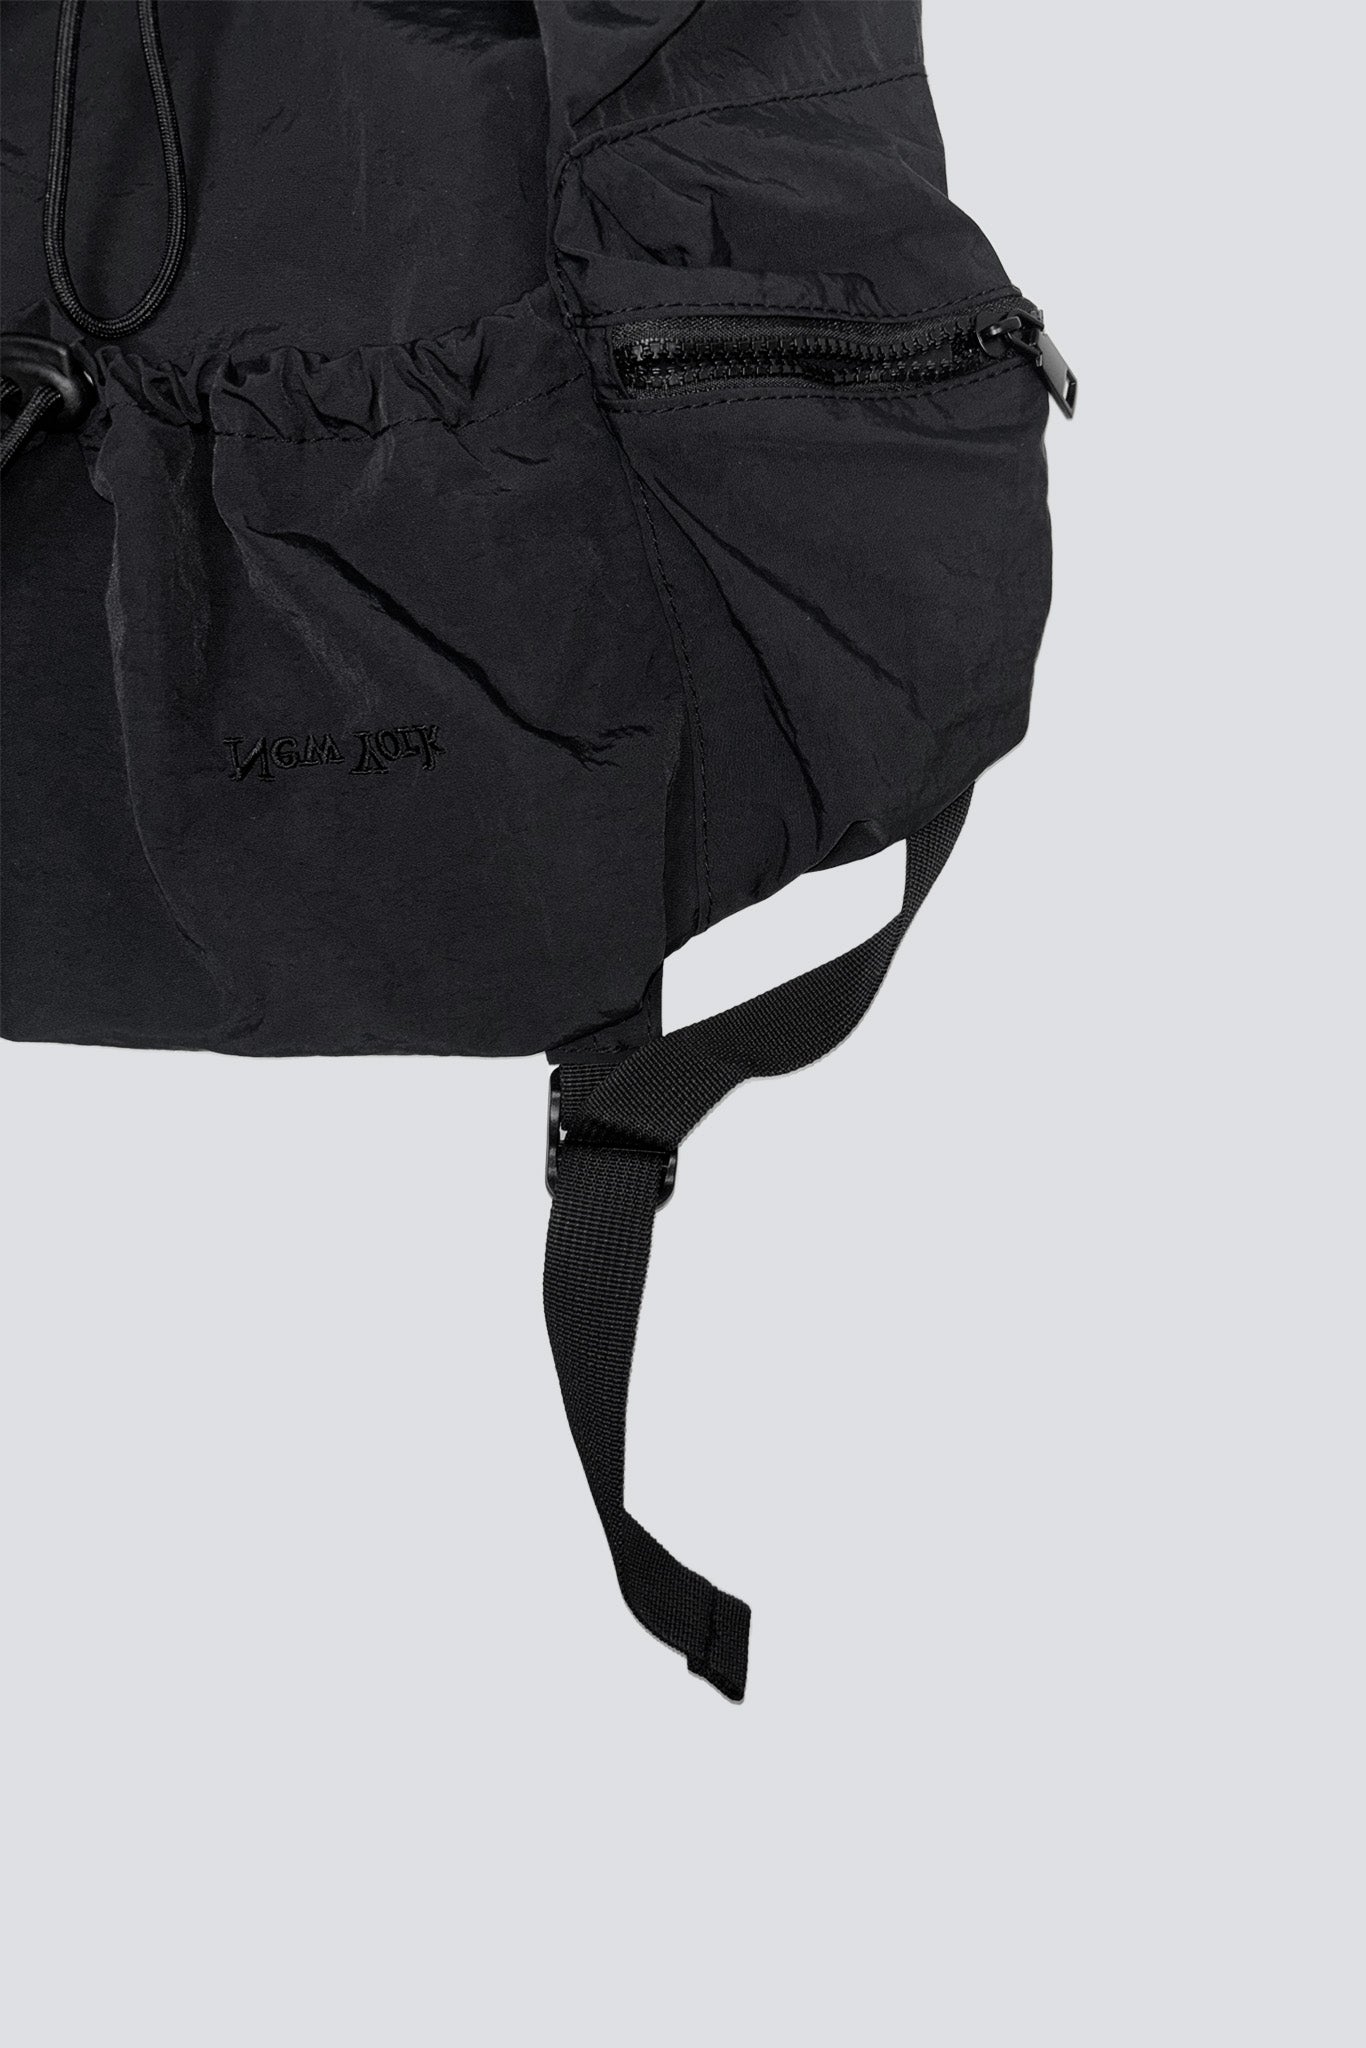 Nylon Embroidered New York Logo Drawstring Backpack - Black